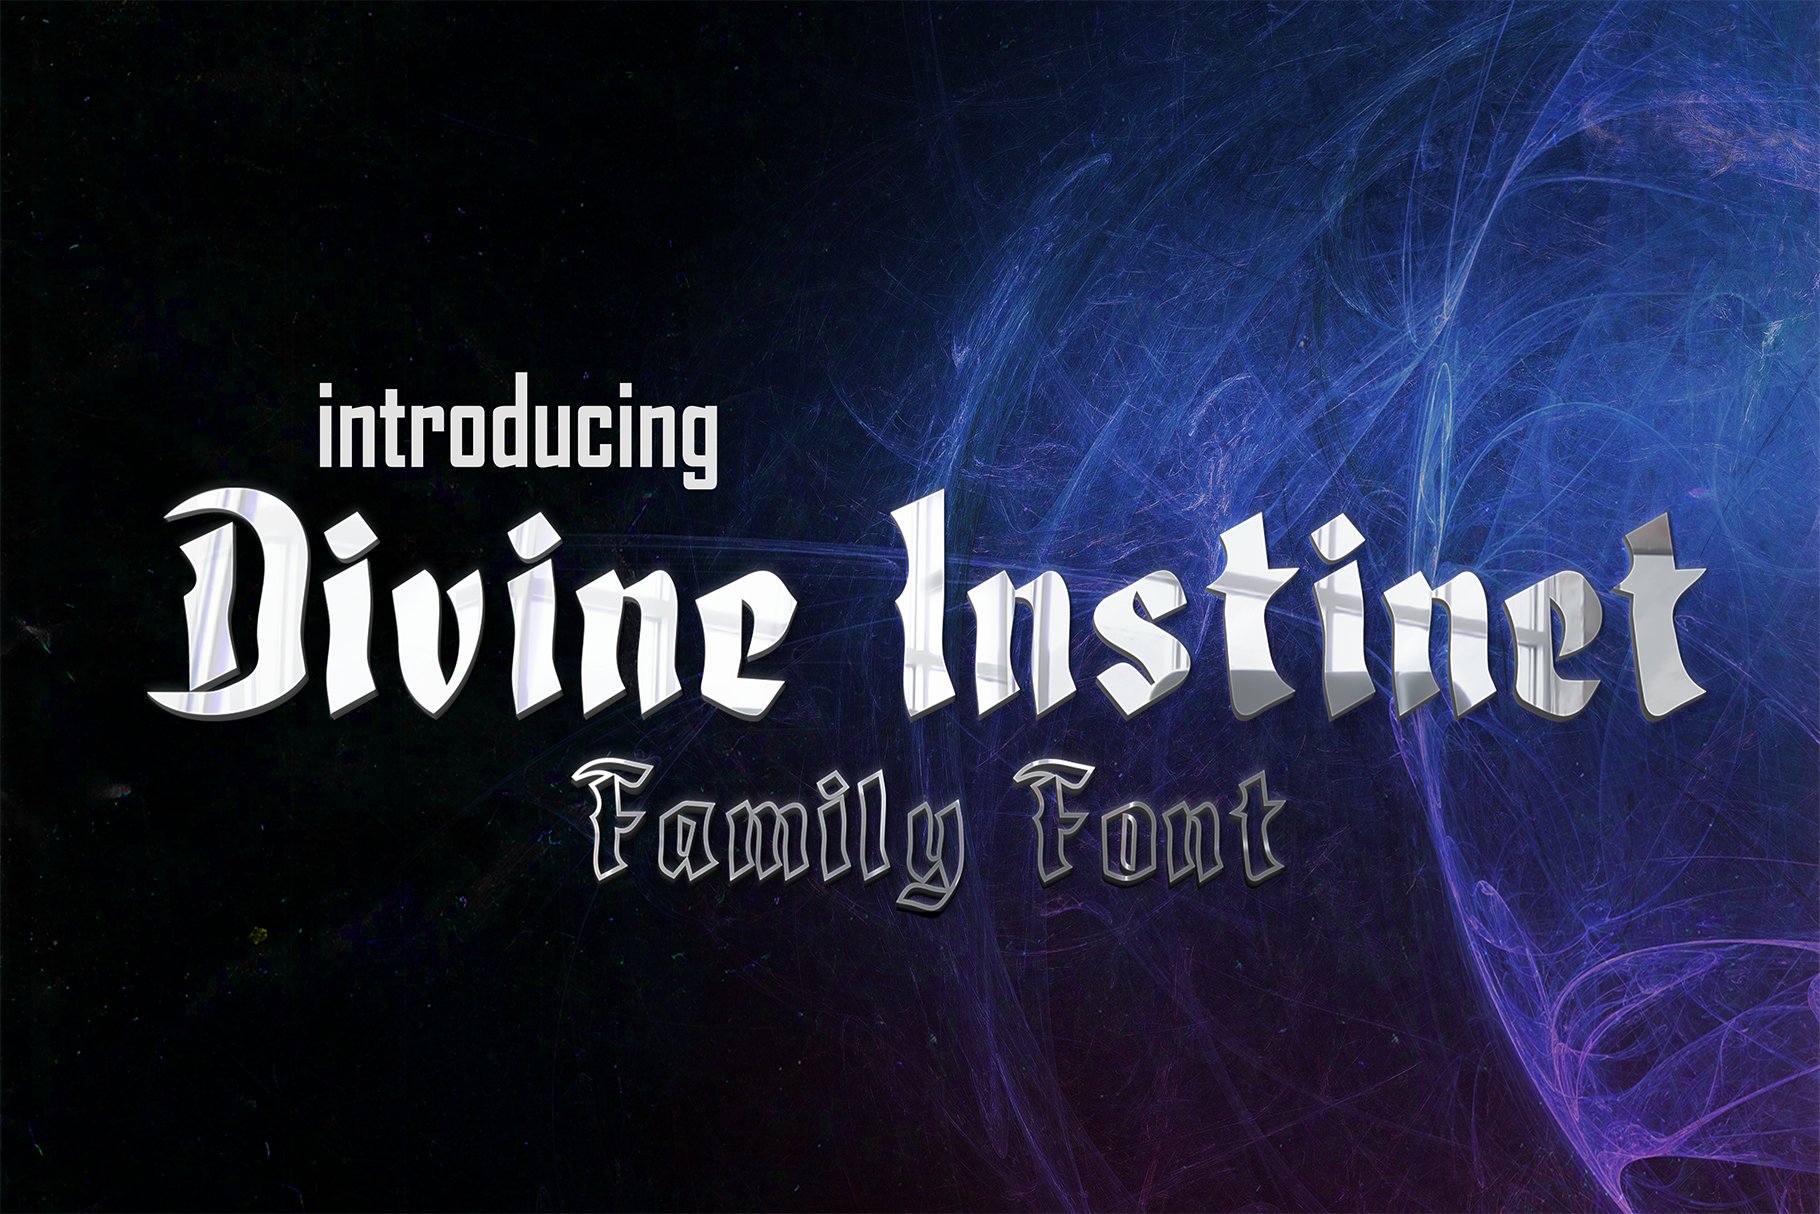 Divine Instinct cover image.